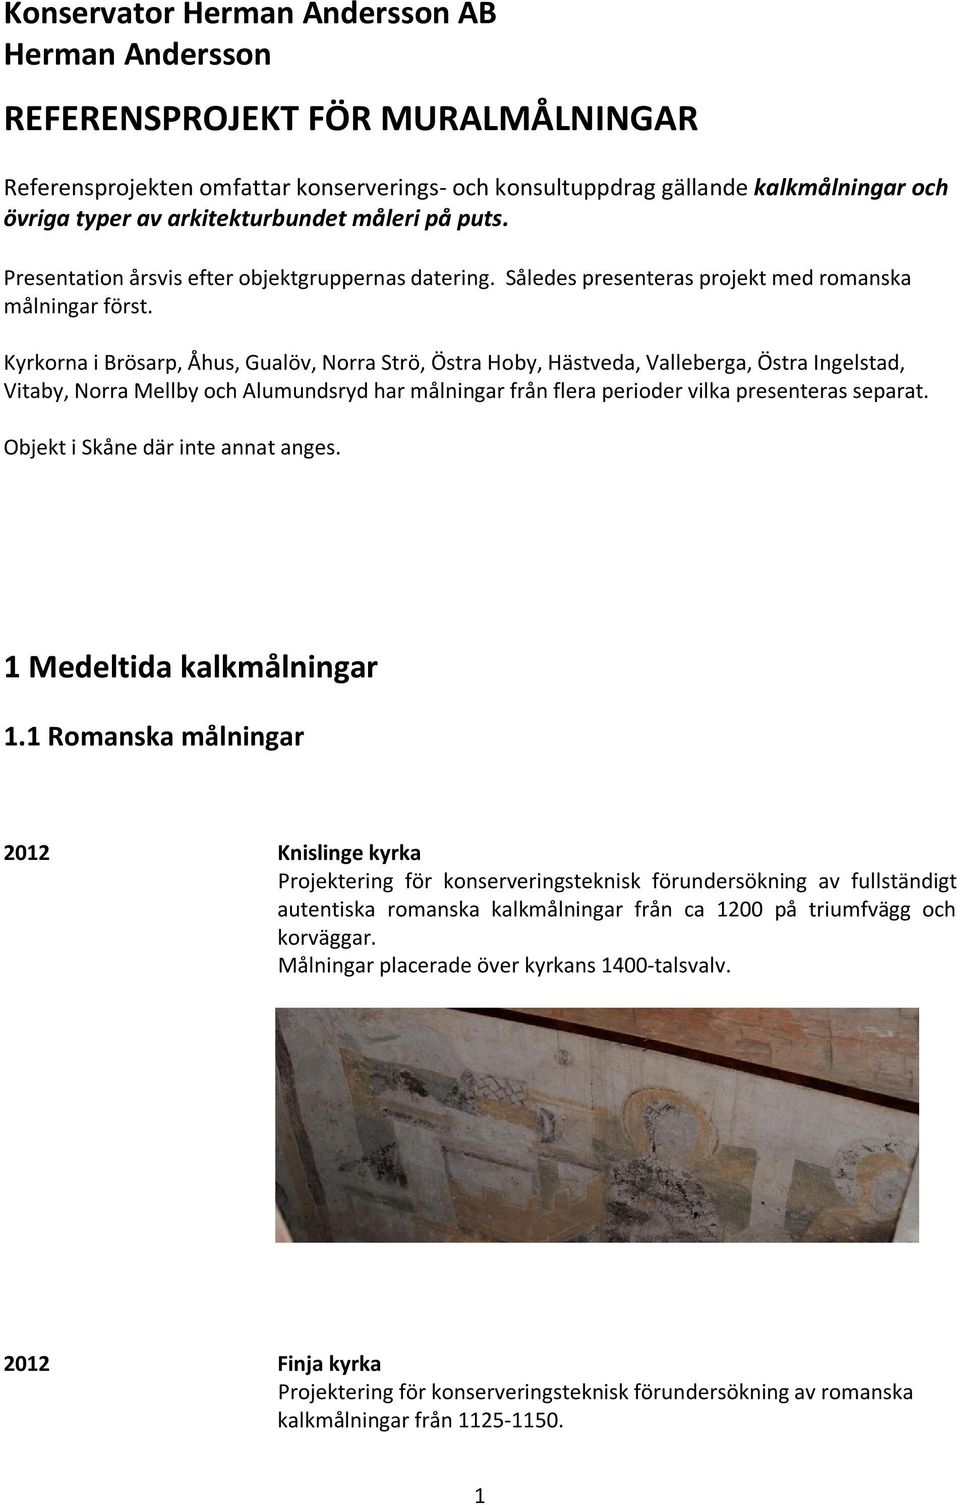 Kyrkorna i Brösarp, Åhus, Gualöv, Norra Strö, Östra Hoby, Hästveda, Valleberga, Östra Ingelstad, Vitaby, Norra Mellby och Alumundsryd har målningar från flera perioder vilka presenteras separat.